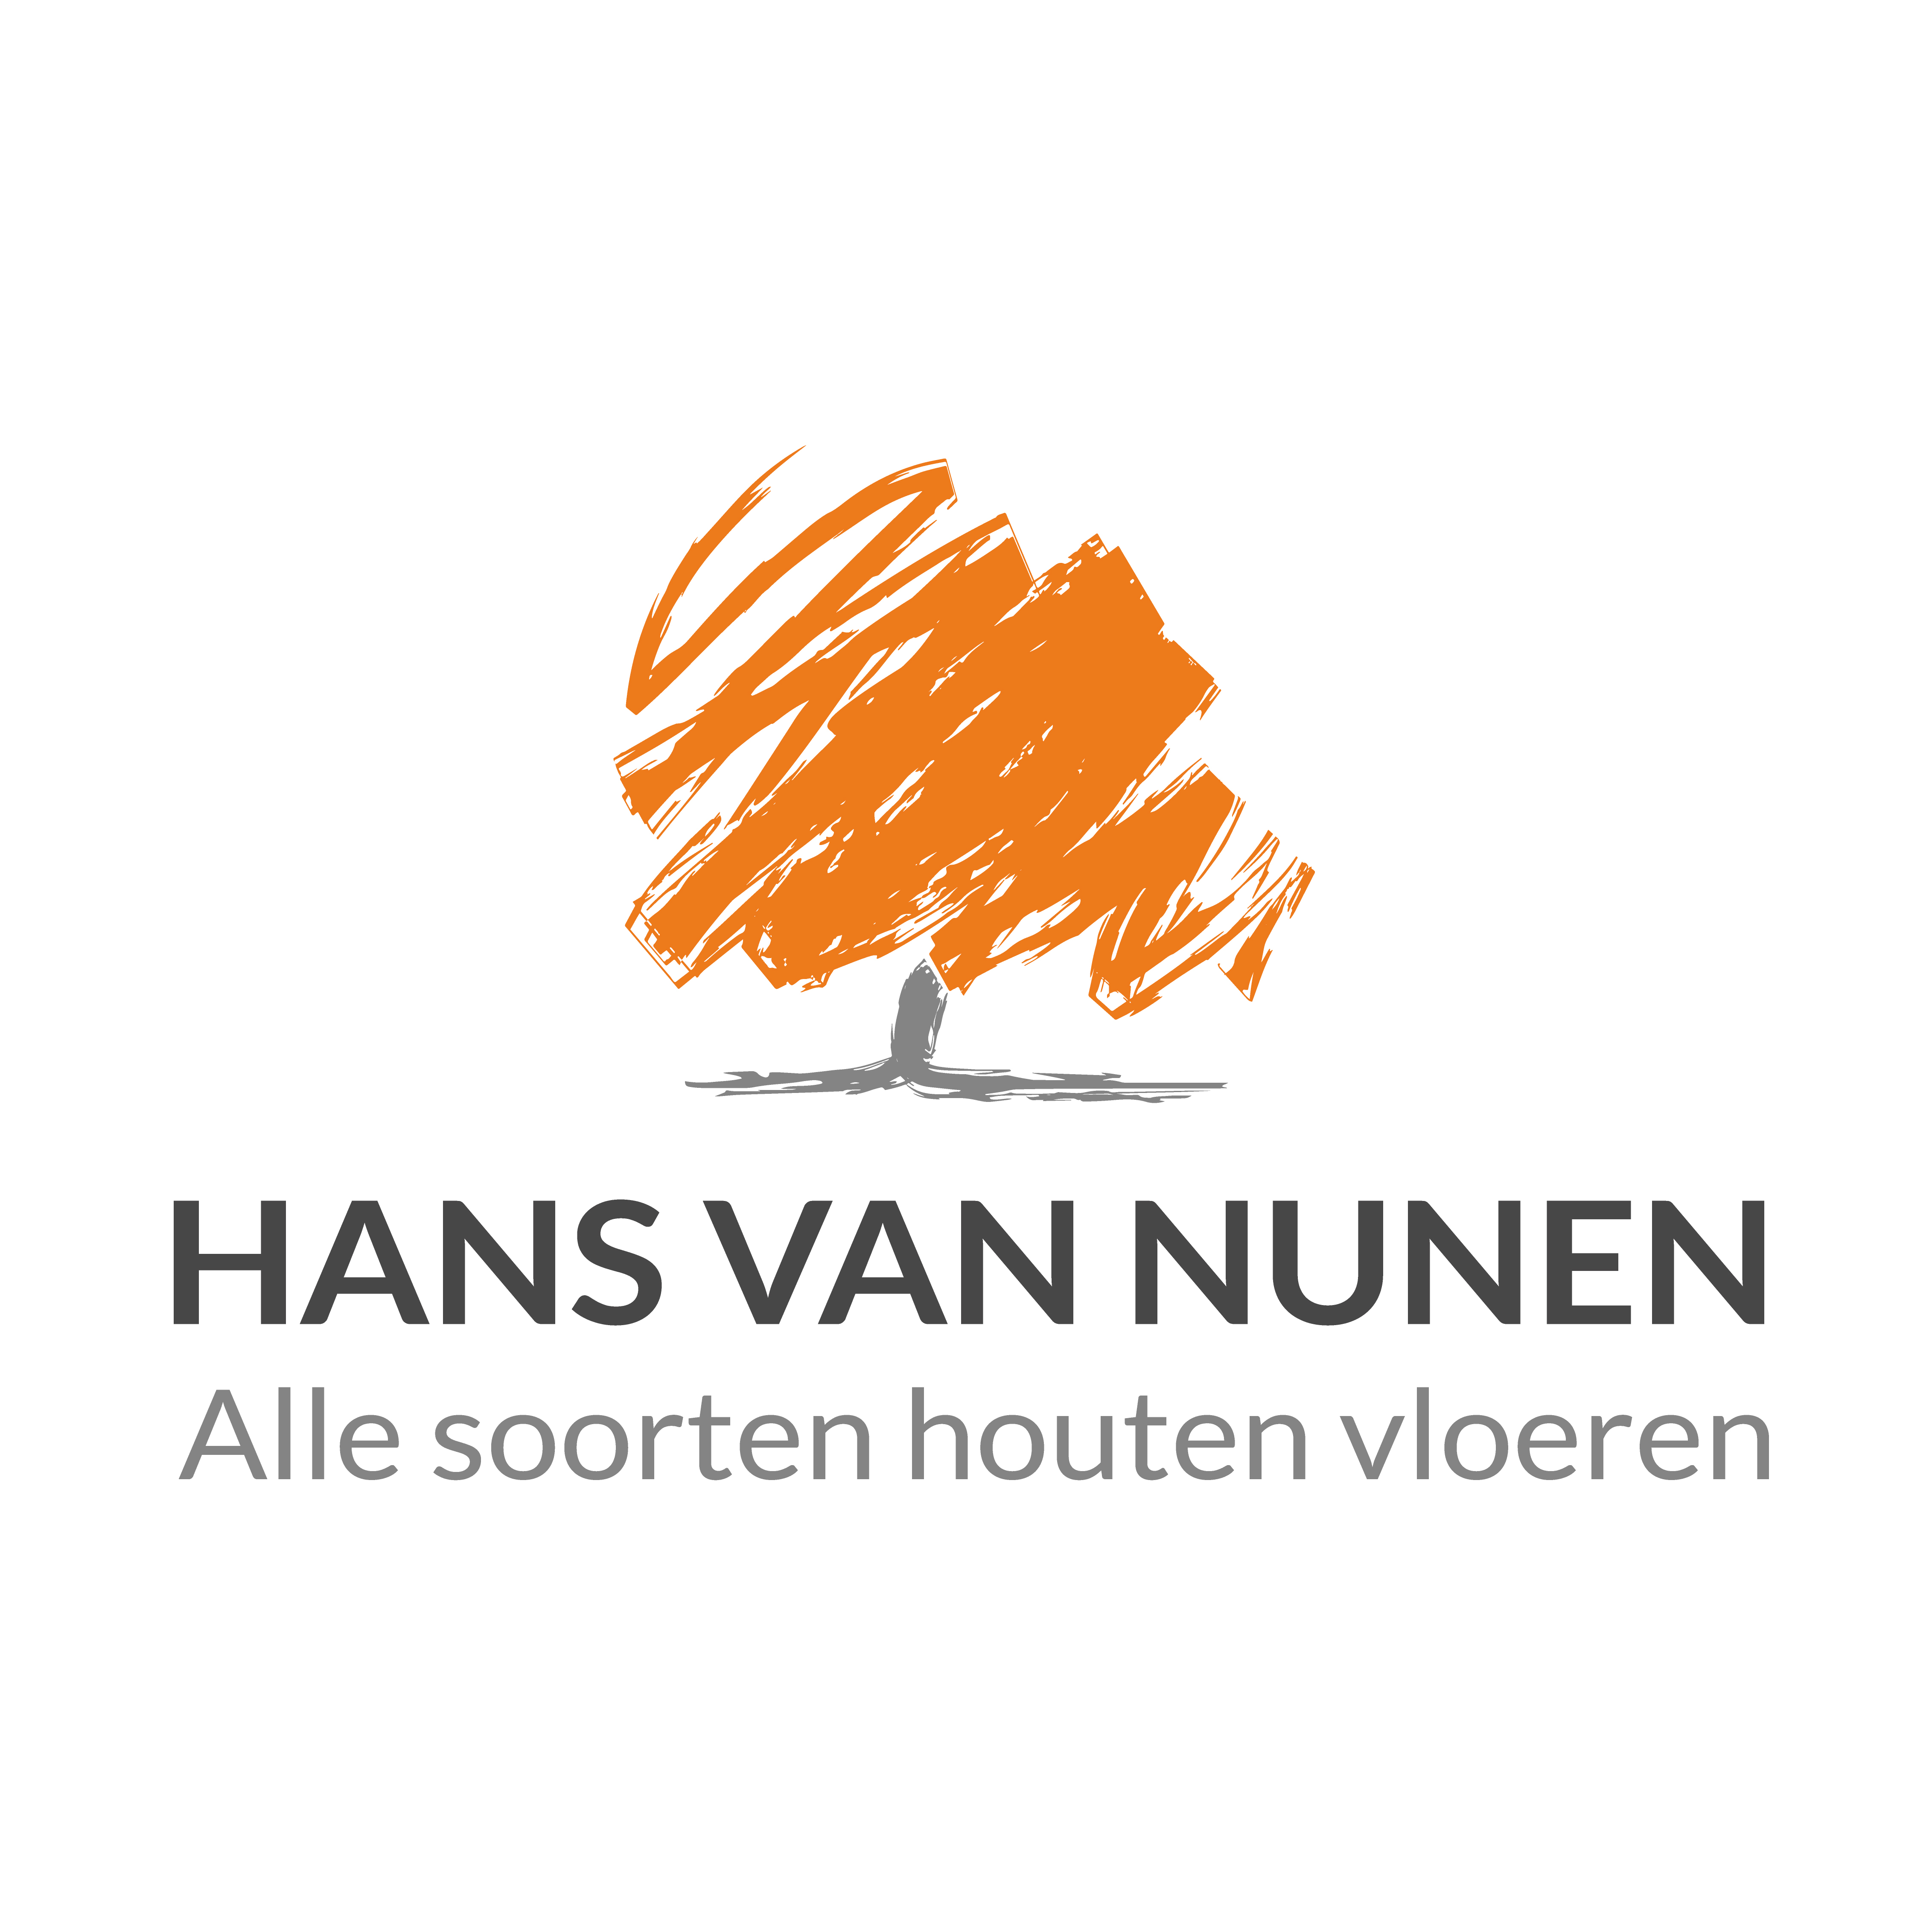 Hans van Nunen Houten en Parket Vloeren